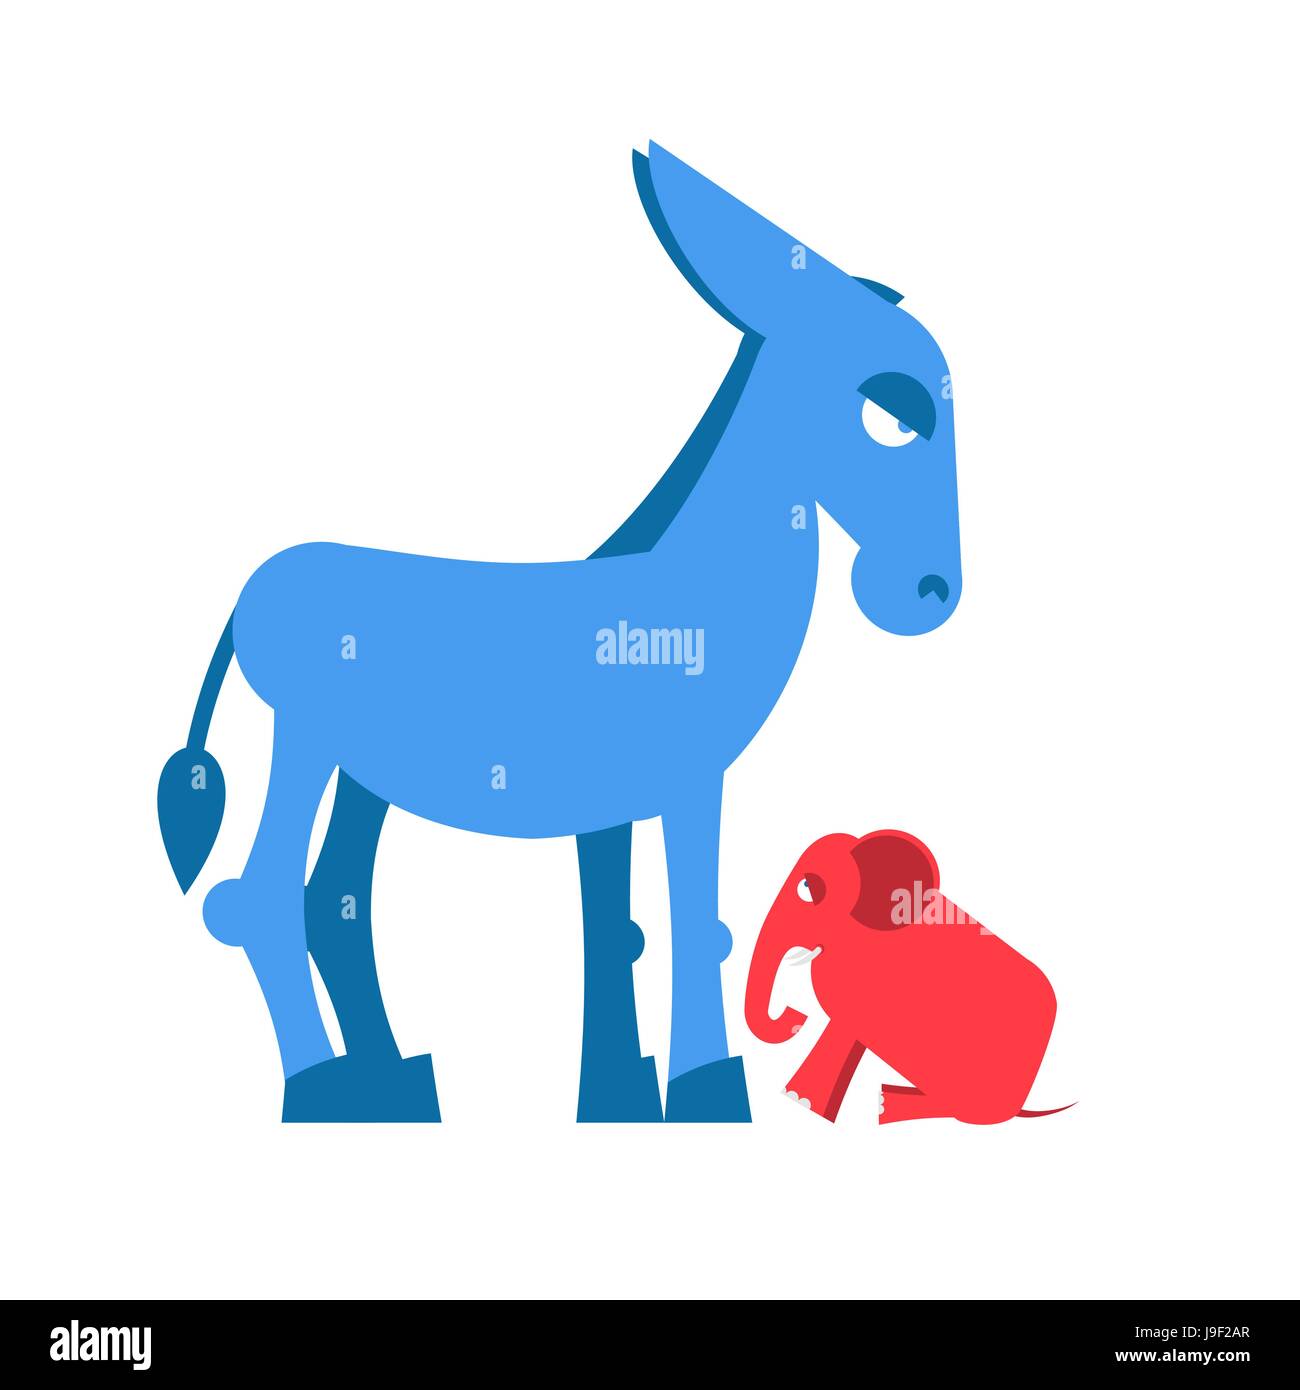 Big Blue Donkey et little red elephant symboles de partis politiques en  Amérique. Démocrates contre républicains. Pour l'opposition politique aux  Etats-Unis. Symbole de po Image Vectorielle Stock - Alamy